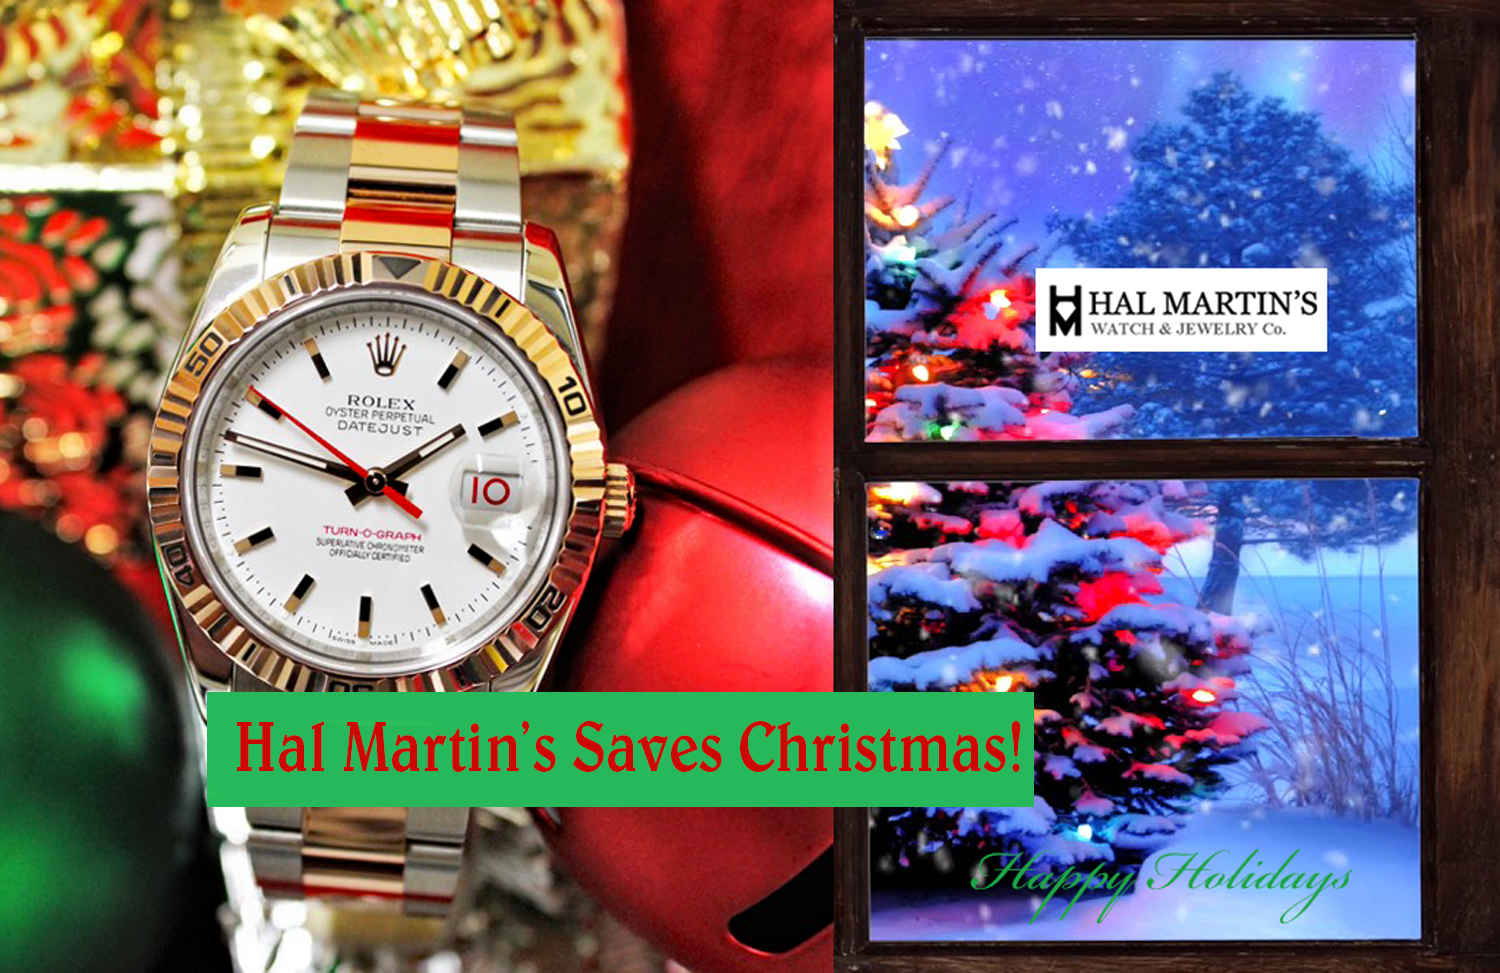 HAL MARTIN’S SAVES CHRISTMAS